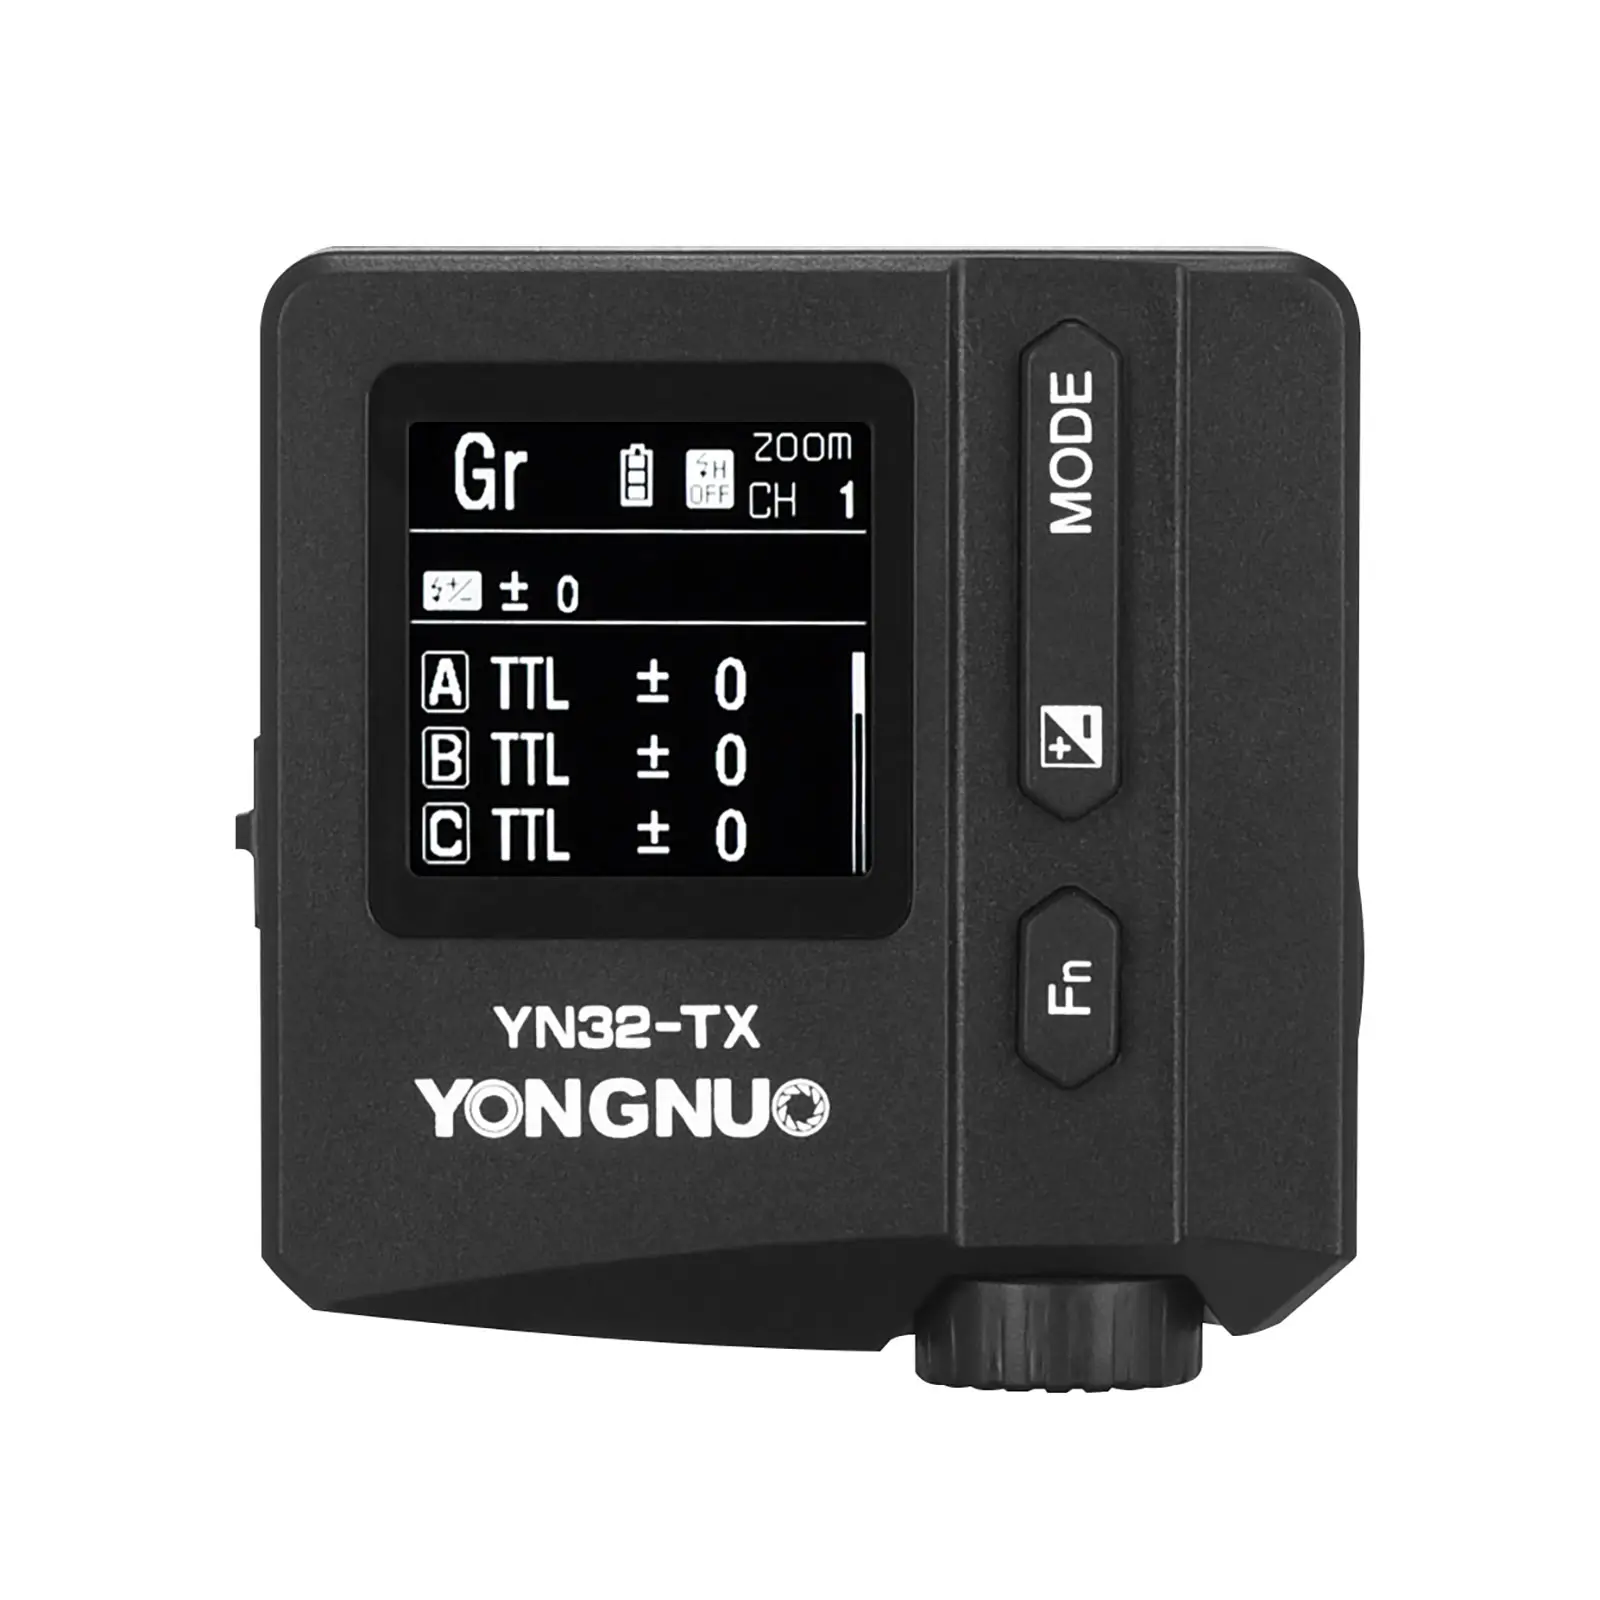 YONGNUO YN32-TX Wireless Flash Transmitter For Sony